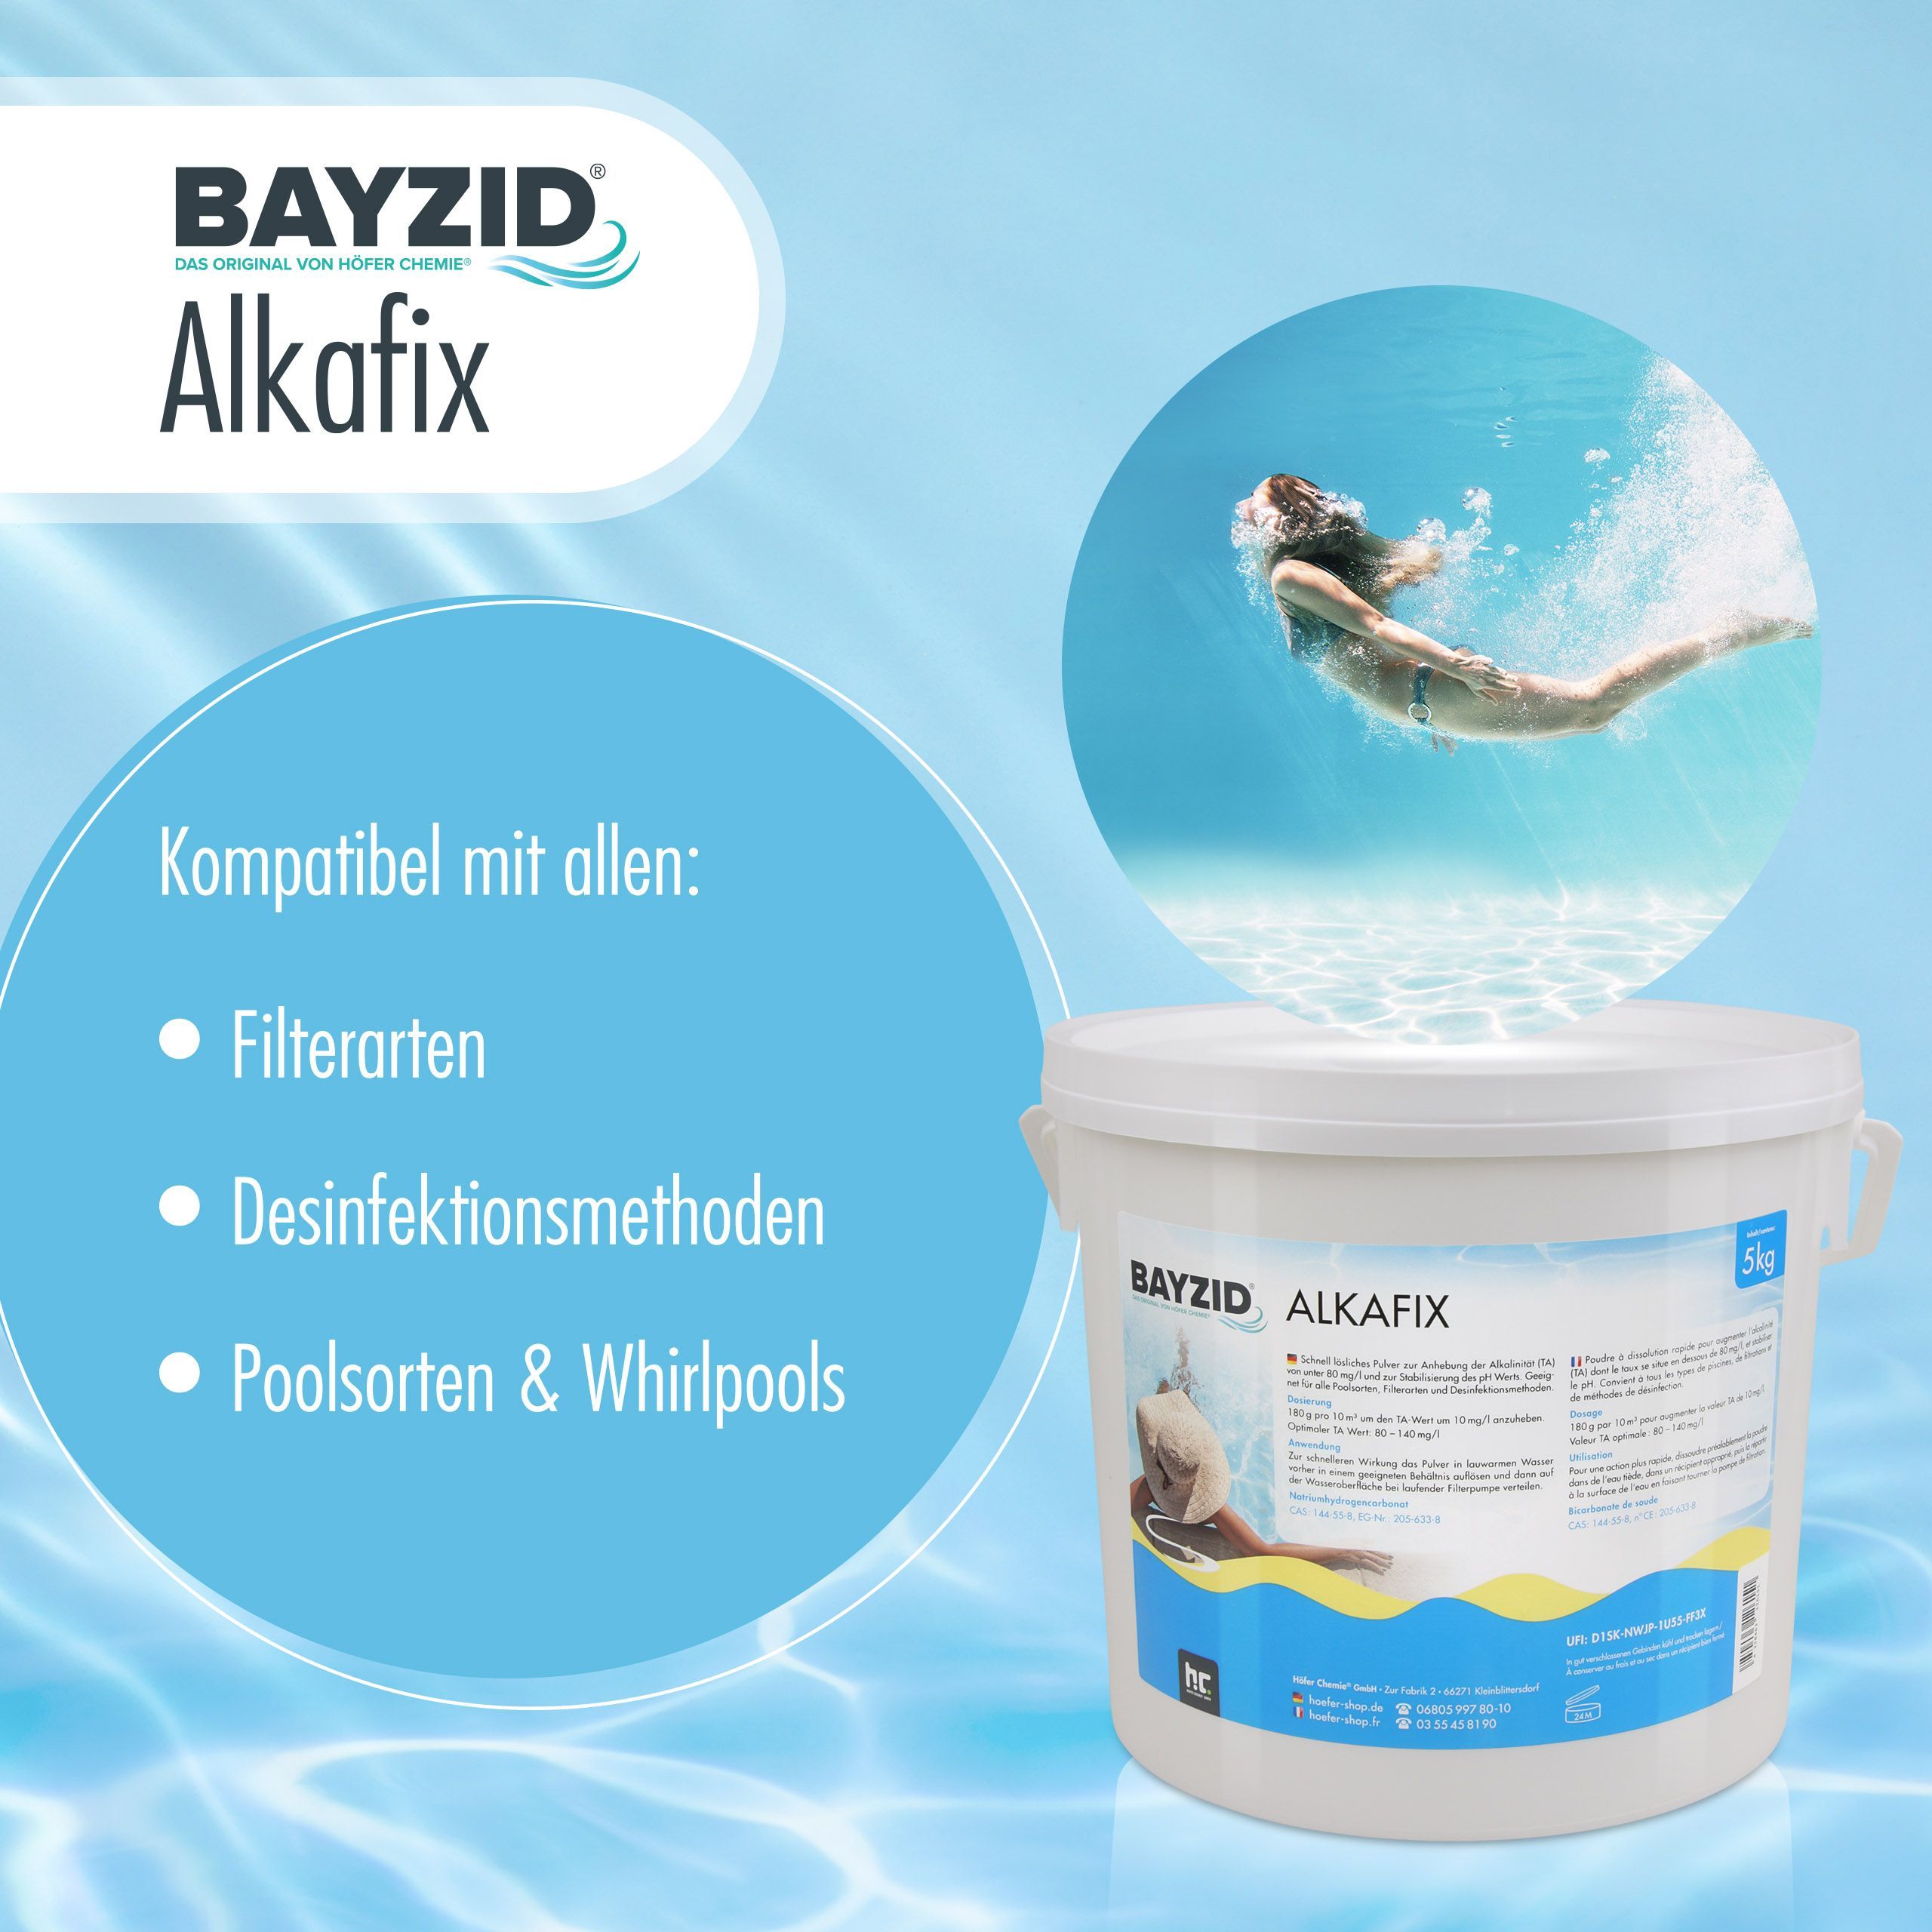 5 kg BAYZID®  Alkafix zur Anhebung der Alkalinität (TA)